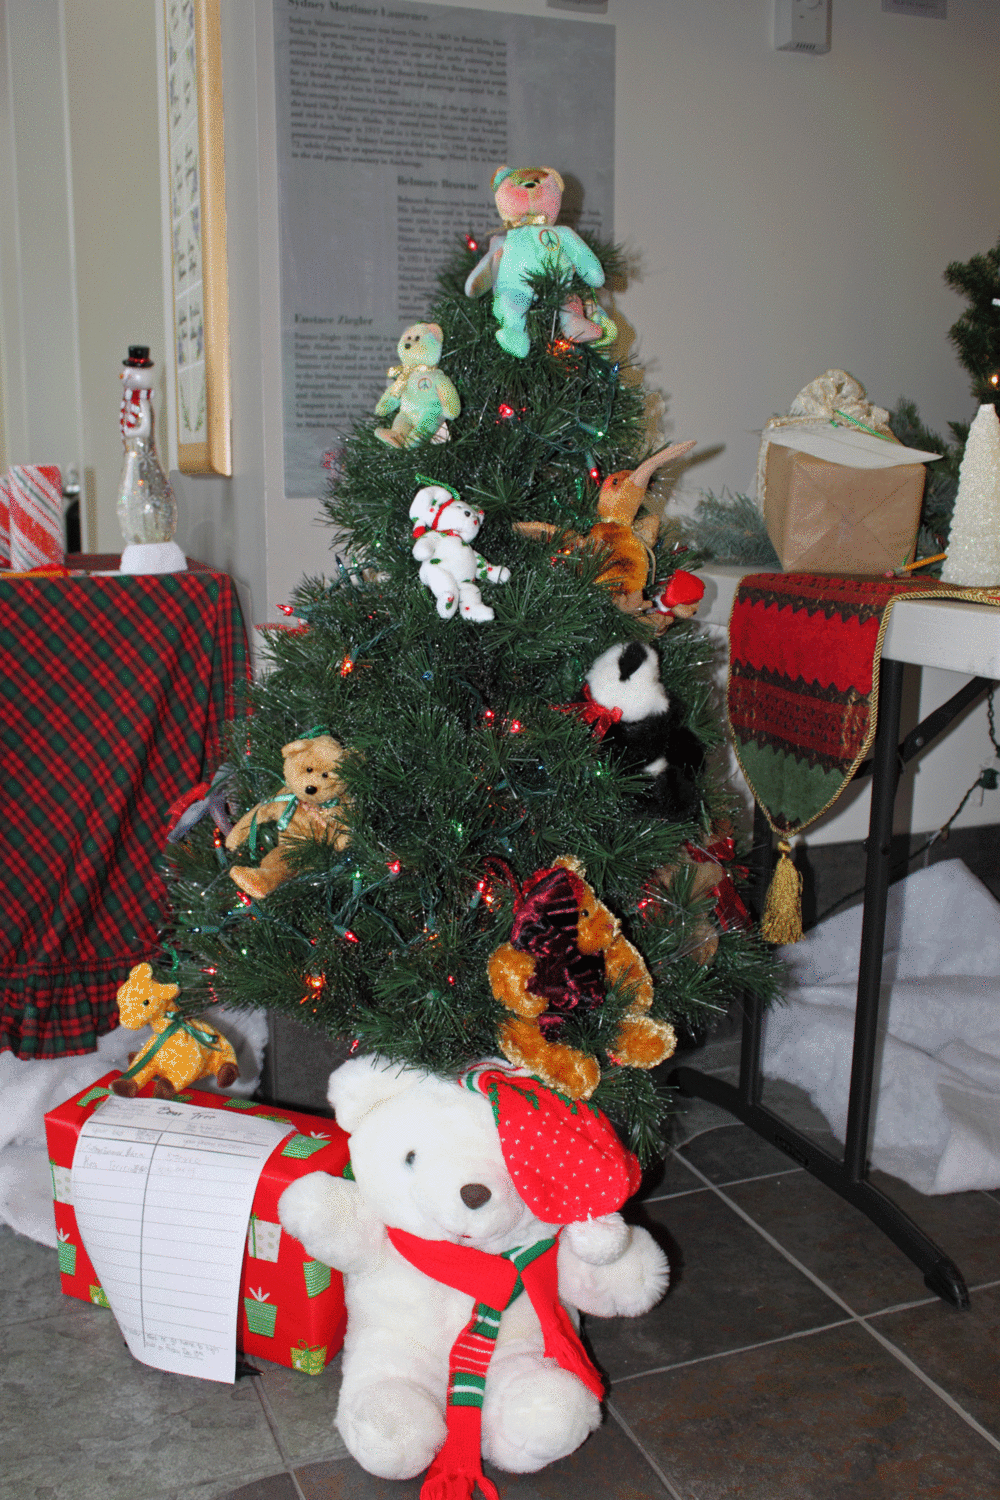 A teddy bear Christmas Tree!